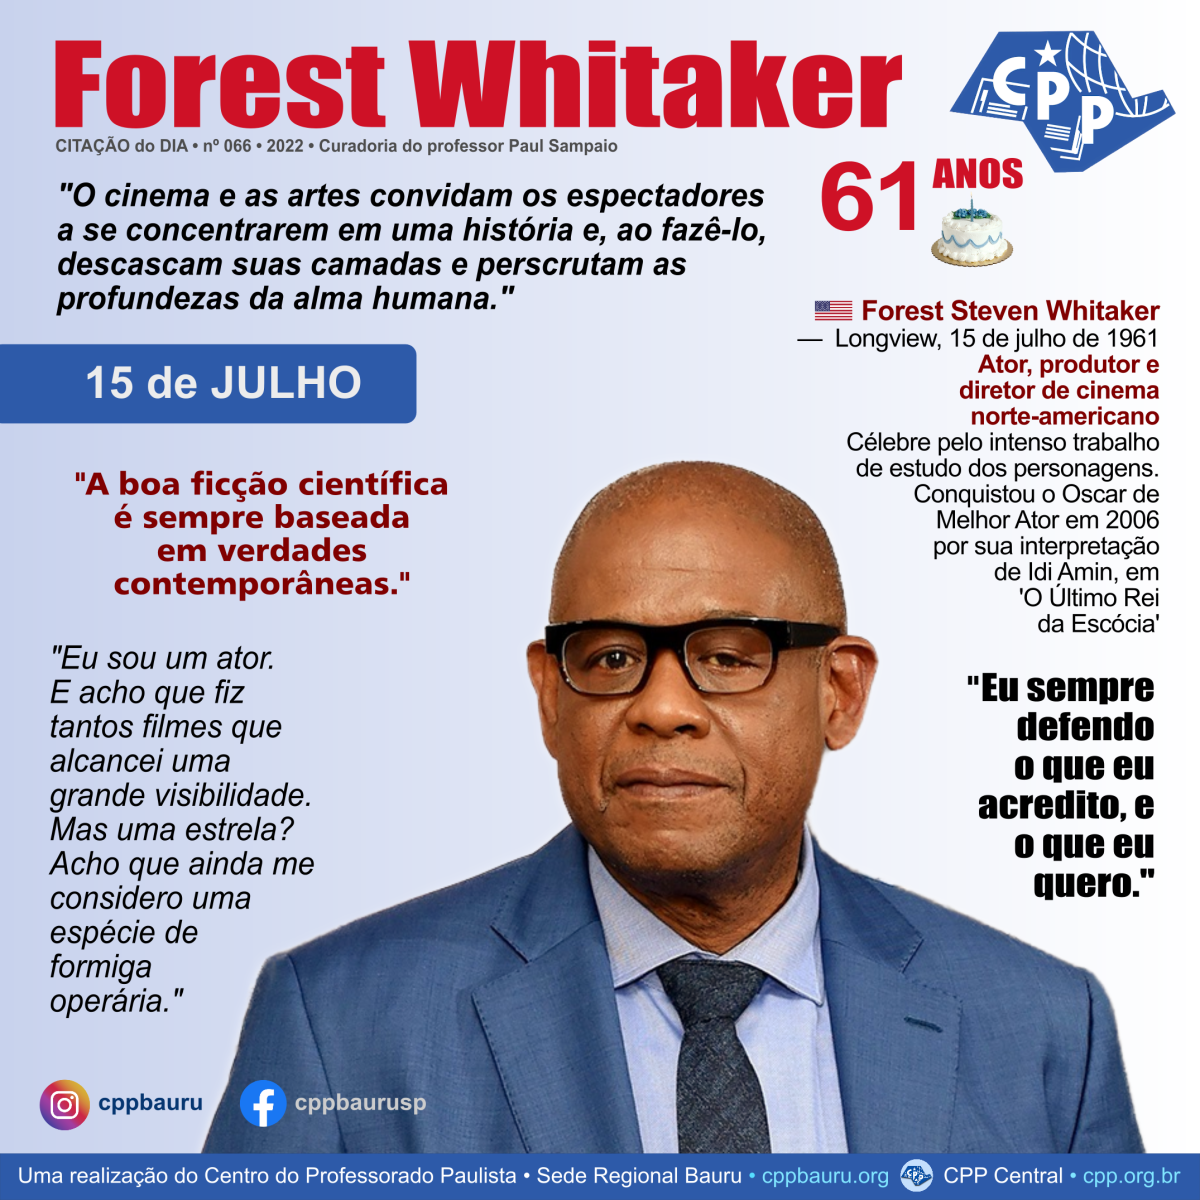 O Oscar do Estudioso • Forest Whitaker • 61 Anos